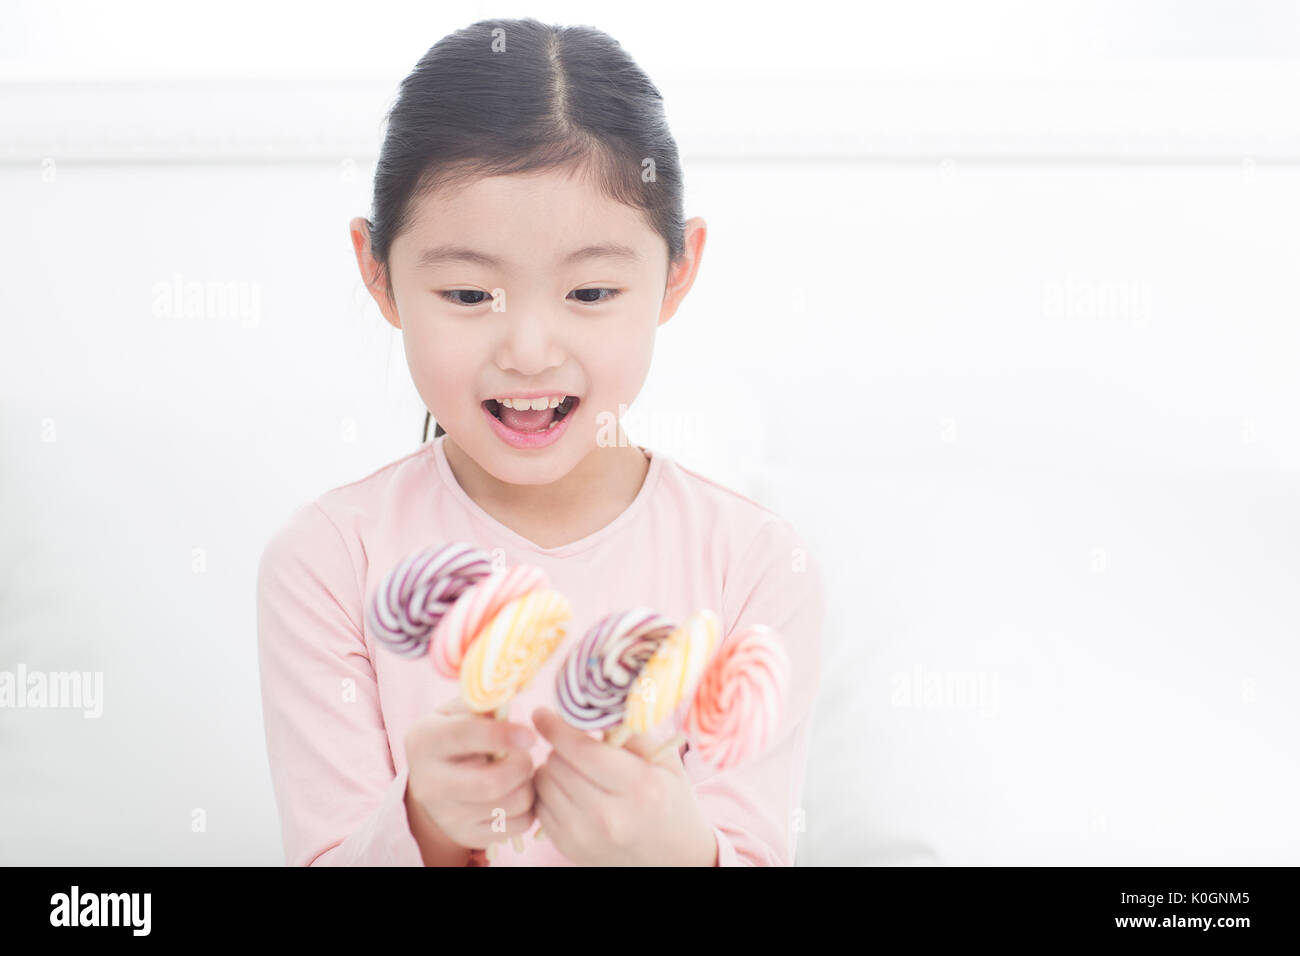 Portrait of smiling girl avec lollipops Banque D'Images